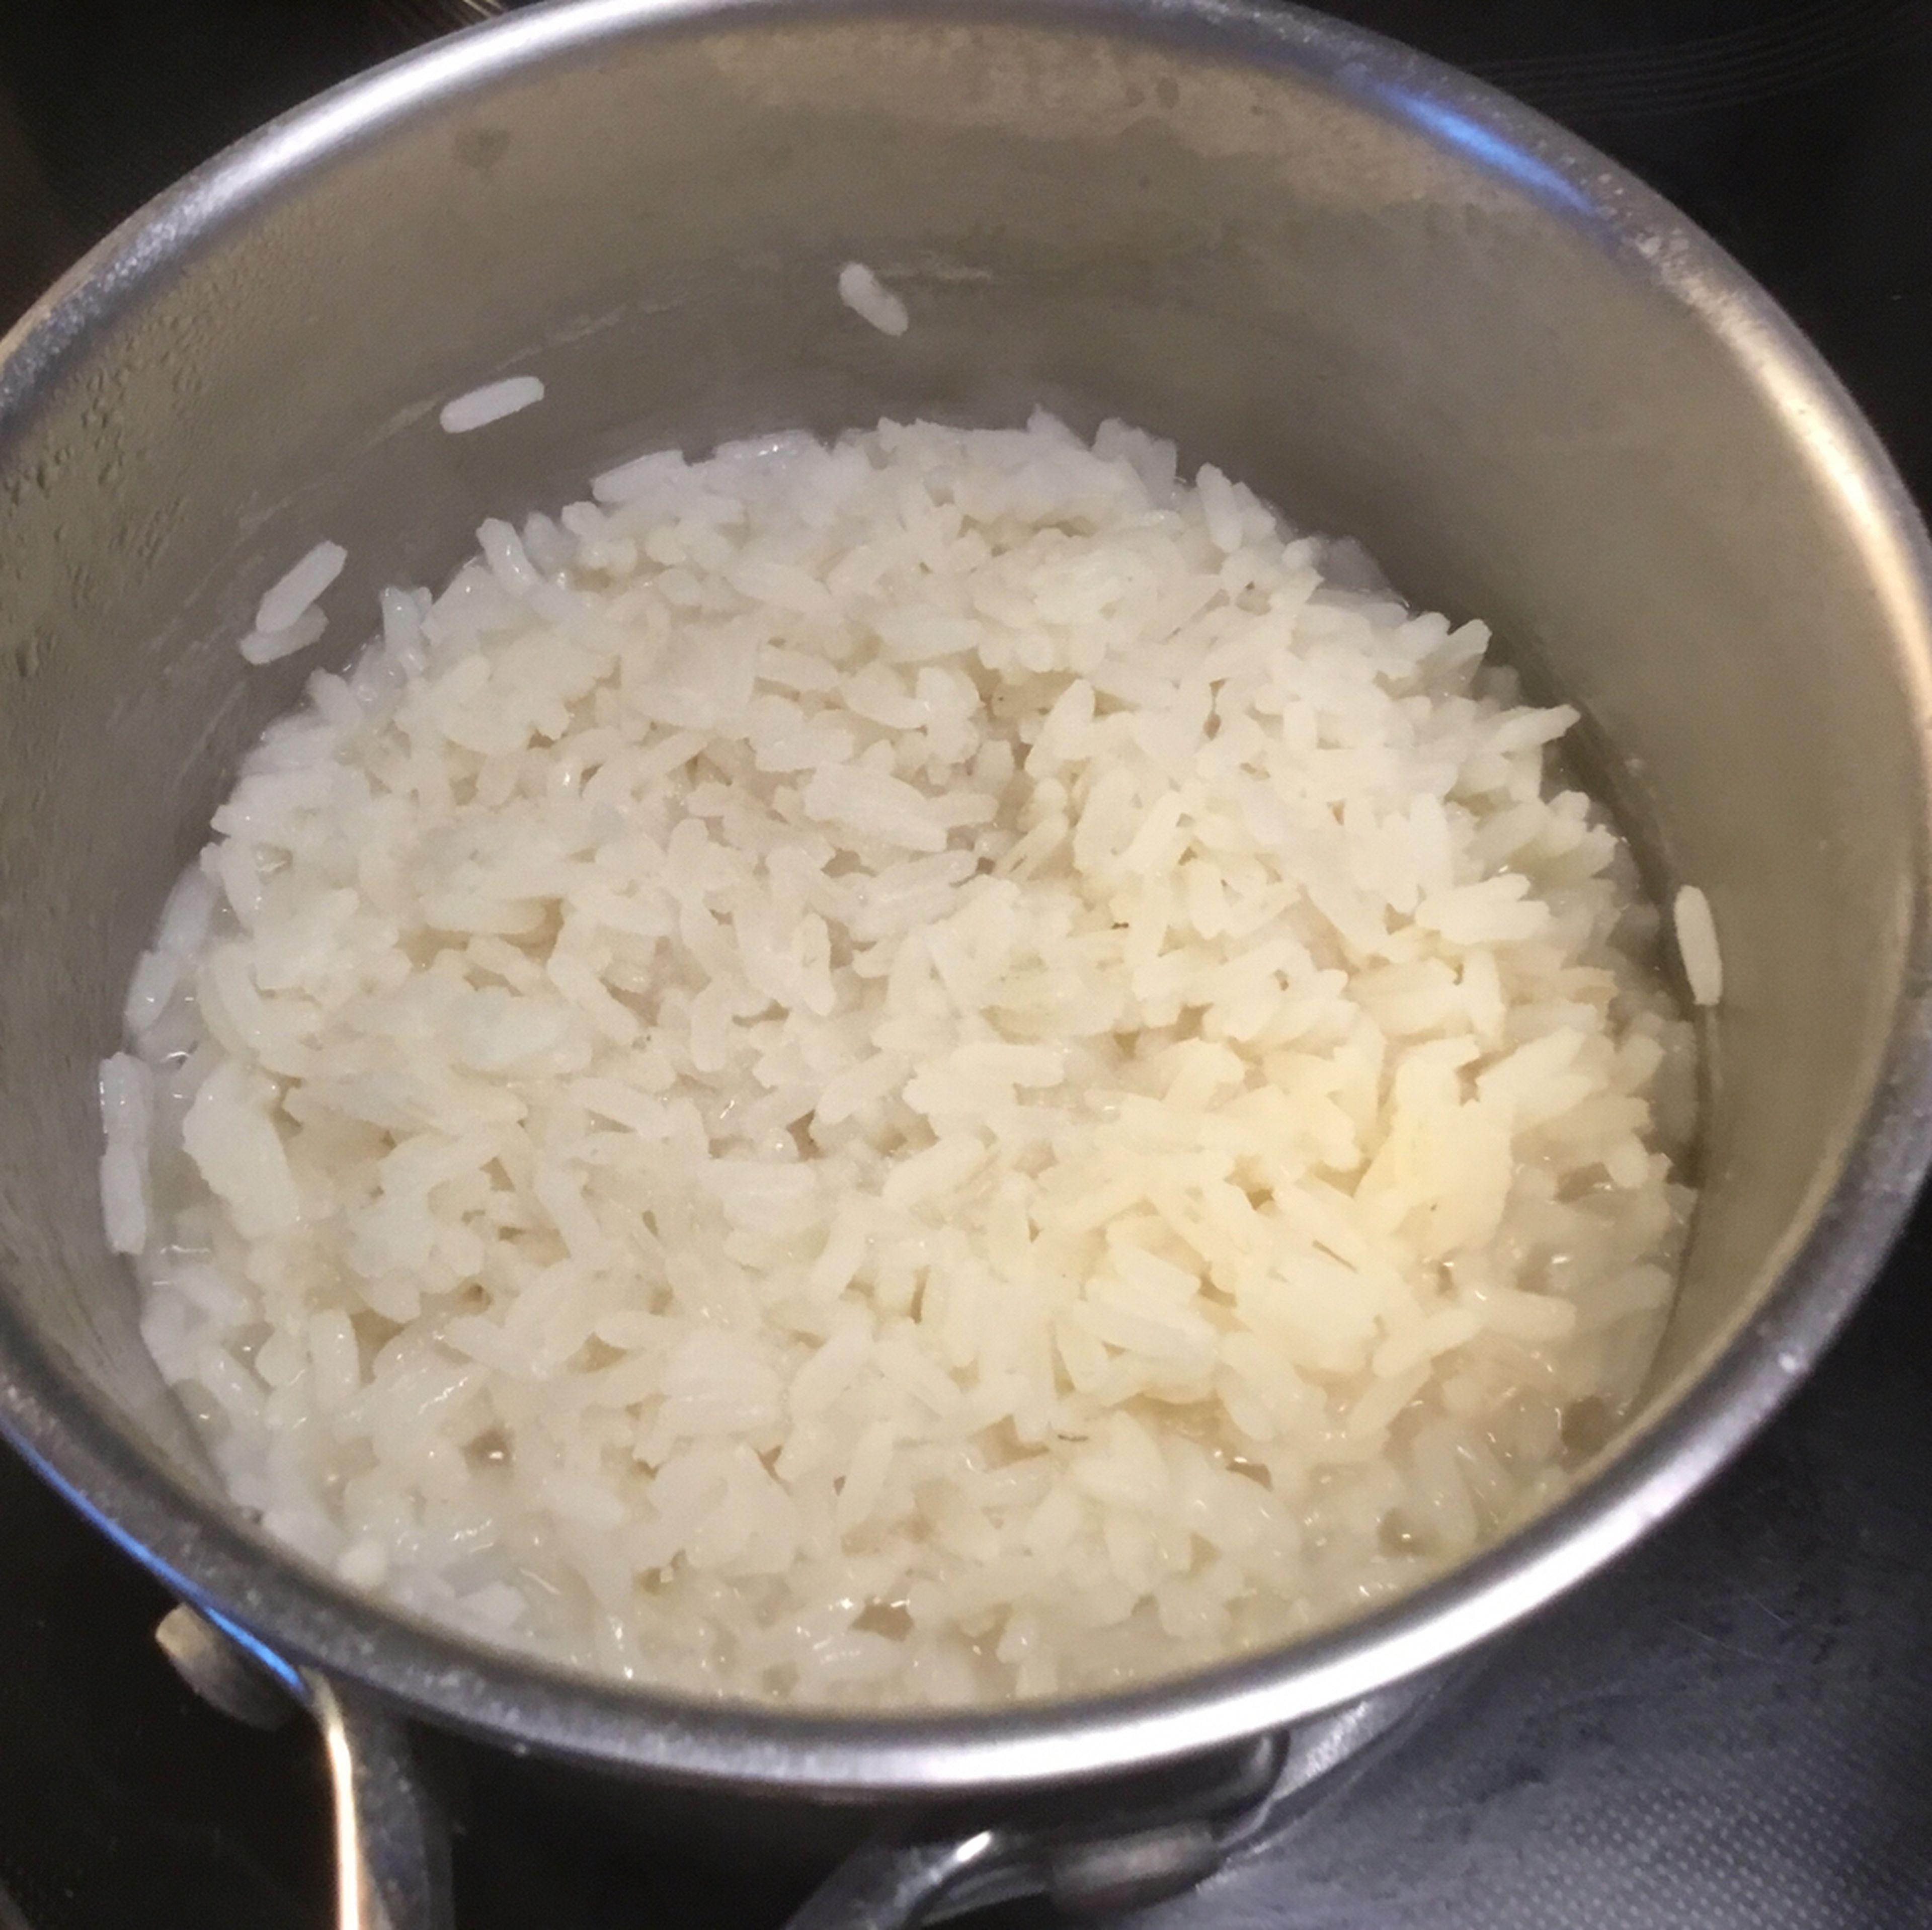 Zwischen dem Gemüse schneiden und Fleisch zubereiten Reis kochen. Das kann man pappig asiatisch machen ( Deckel beim kochen drauf legen) oder körnig deutsch. Bei der zweiten Zubereitungsart den Topf offenlassen, Wasser abdampfen lassen und ergänzen bis der Reis weich ist. Auch die Reisart ist entscheidend ob pappig oder körnig. Ein Duftreis dauert sehr kurz und ist i.d.Regel sehr pappig, dazwischen liegt der Basmatireis und am körnigsten ist ein paraboiled Langkornreis.